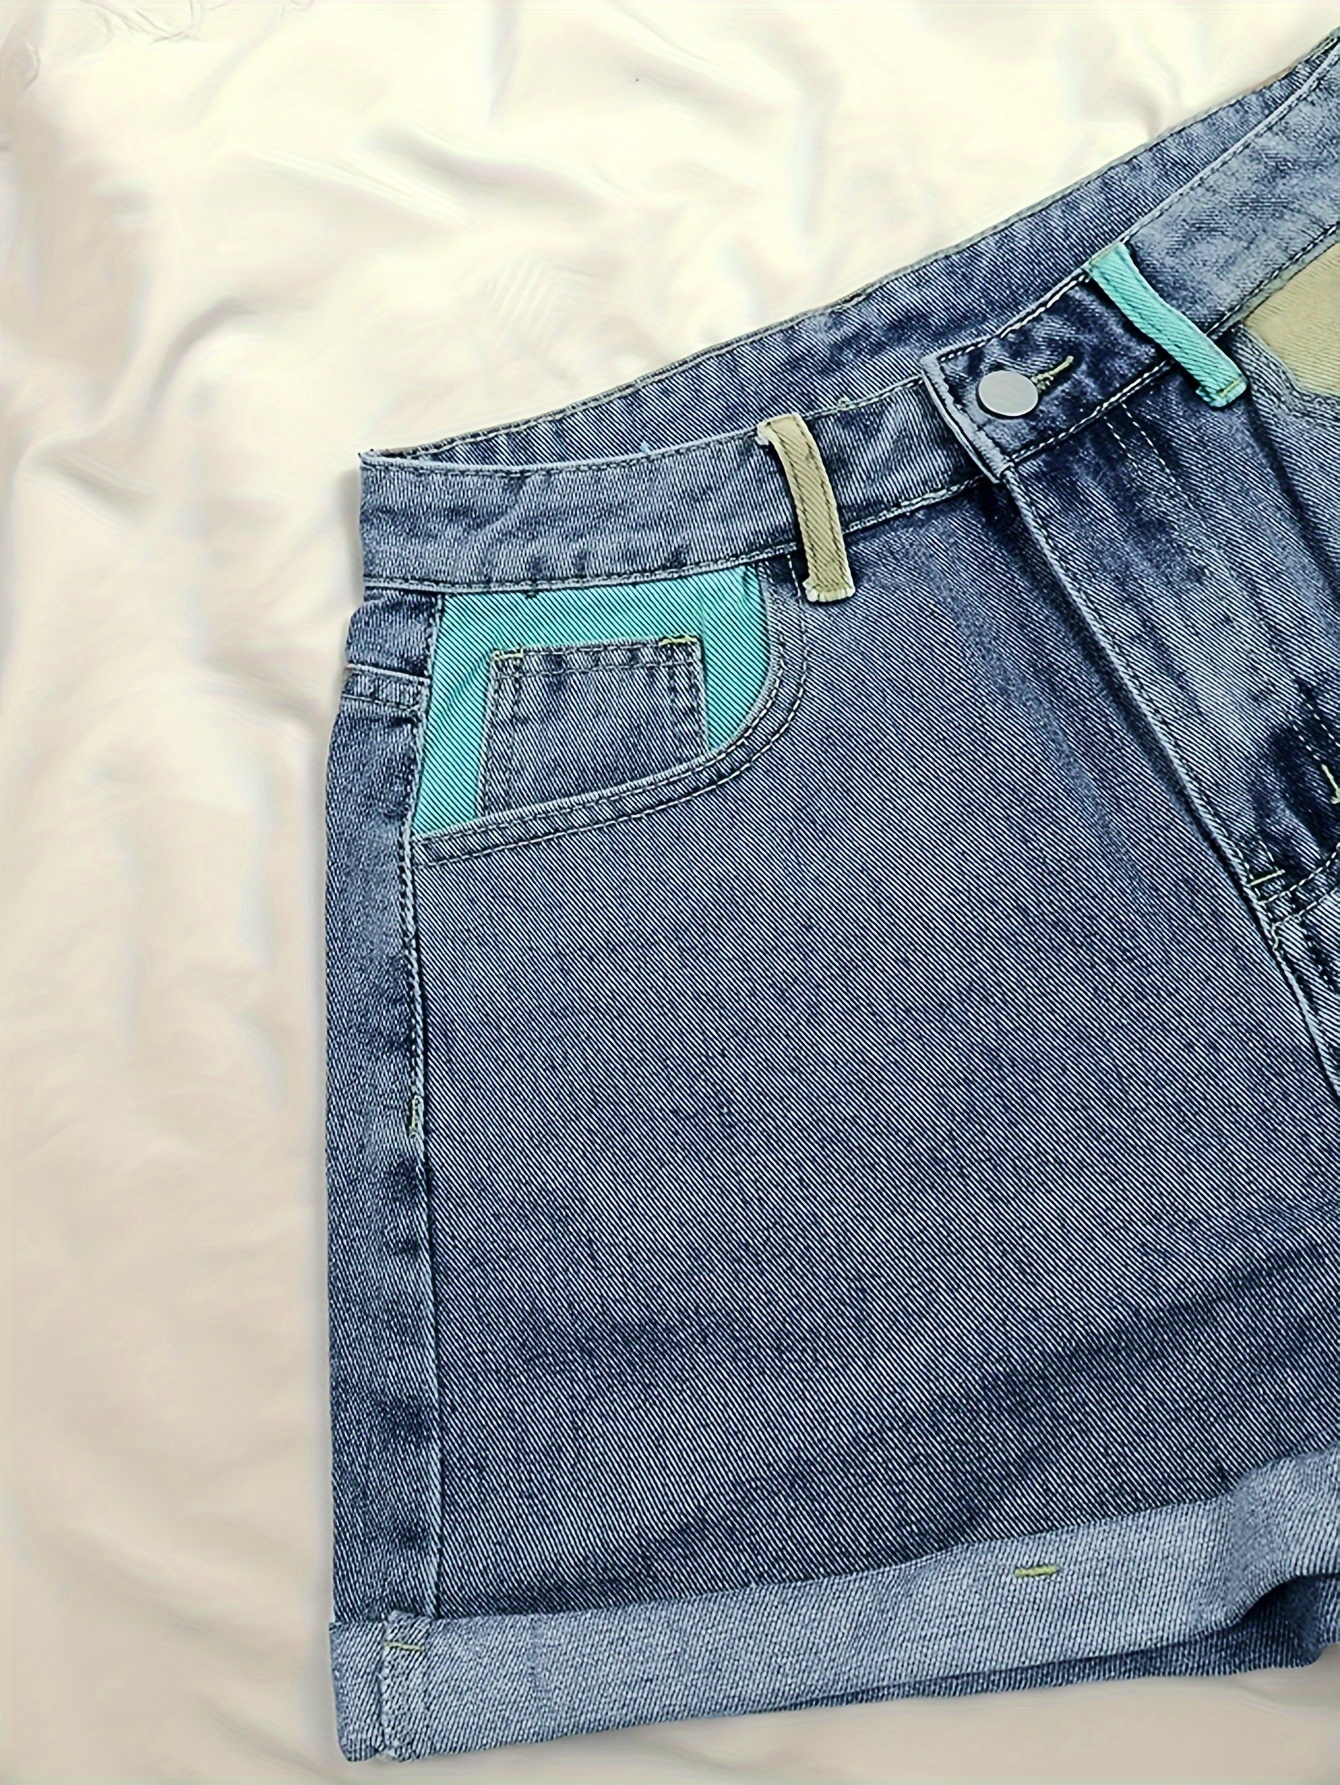 Color Block Slim Fit Jeans Pants for Women